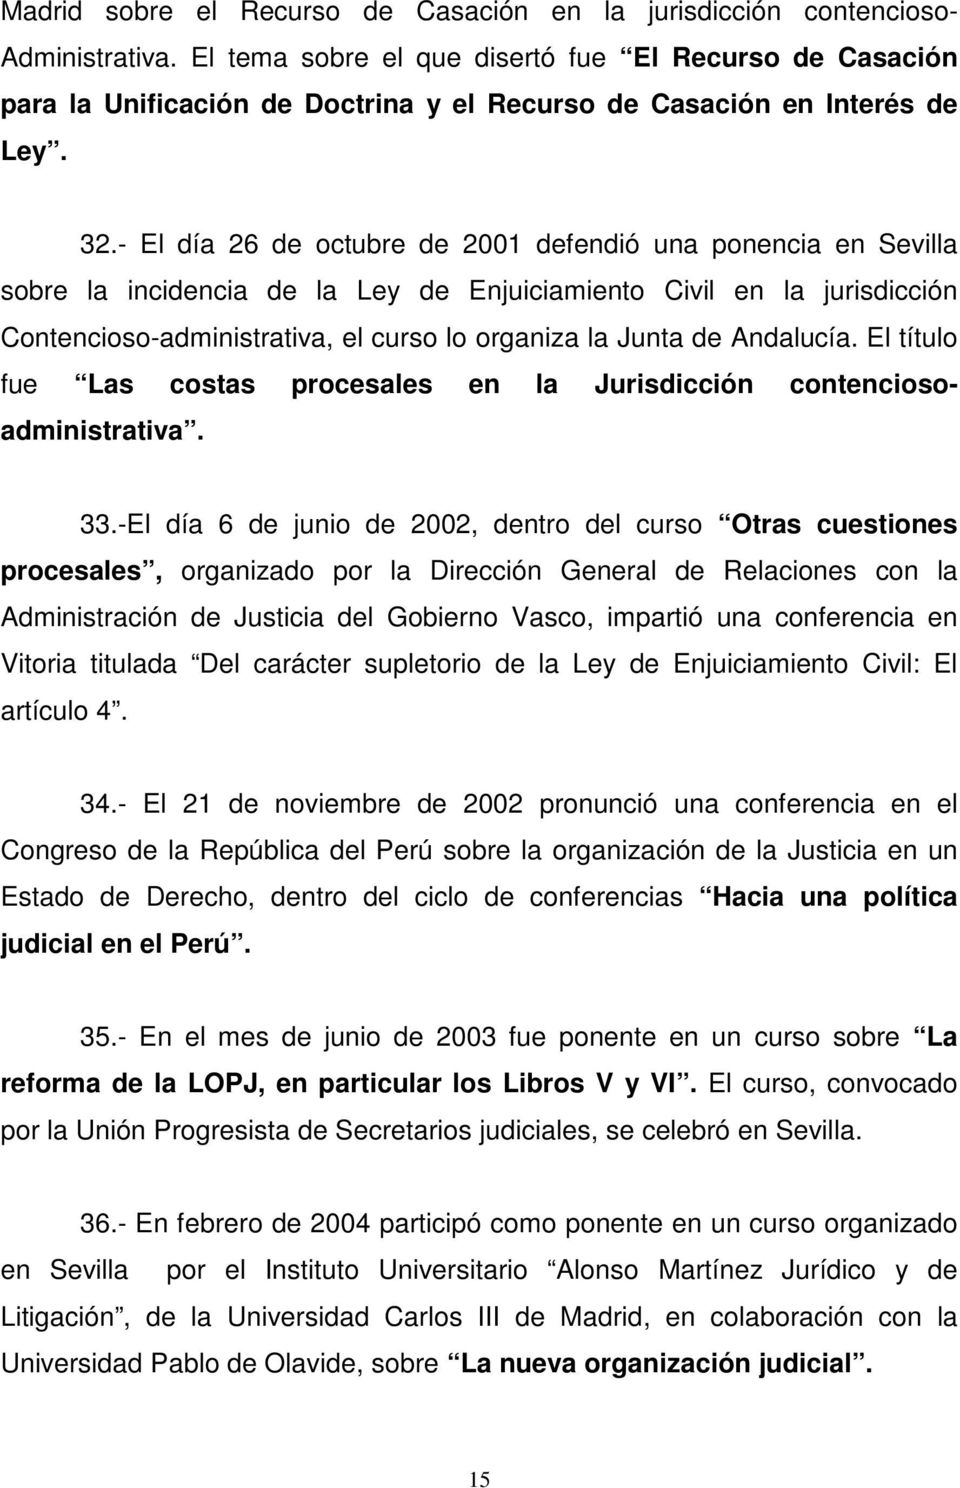 - El día 26 de octubre de 2001 defendió una ponencia en Sevilla sobre la incidencia de la Ley de Enjuiciamiento Civil en la jurisdicción Contencioso-administrativa, el curso lo organiza la Junta de